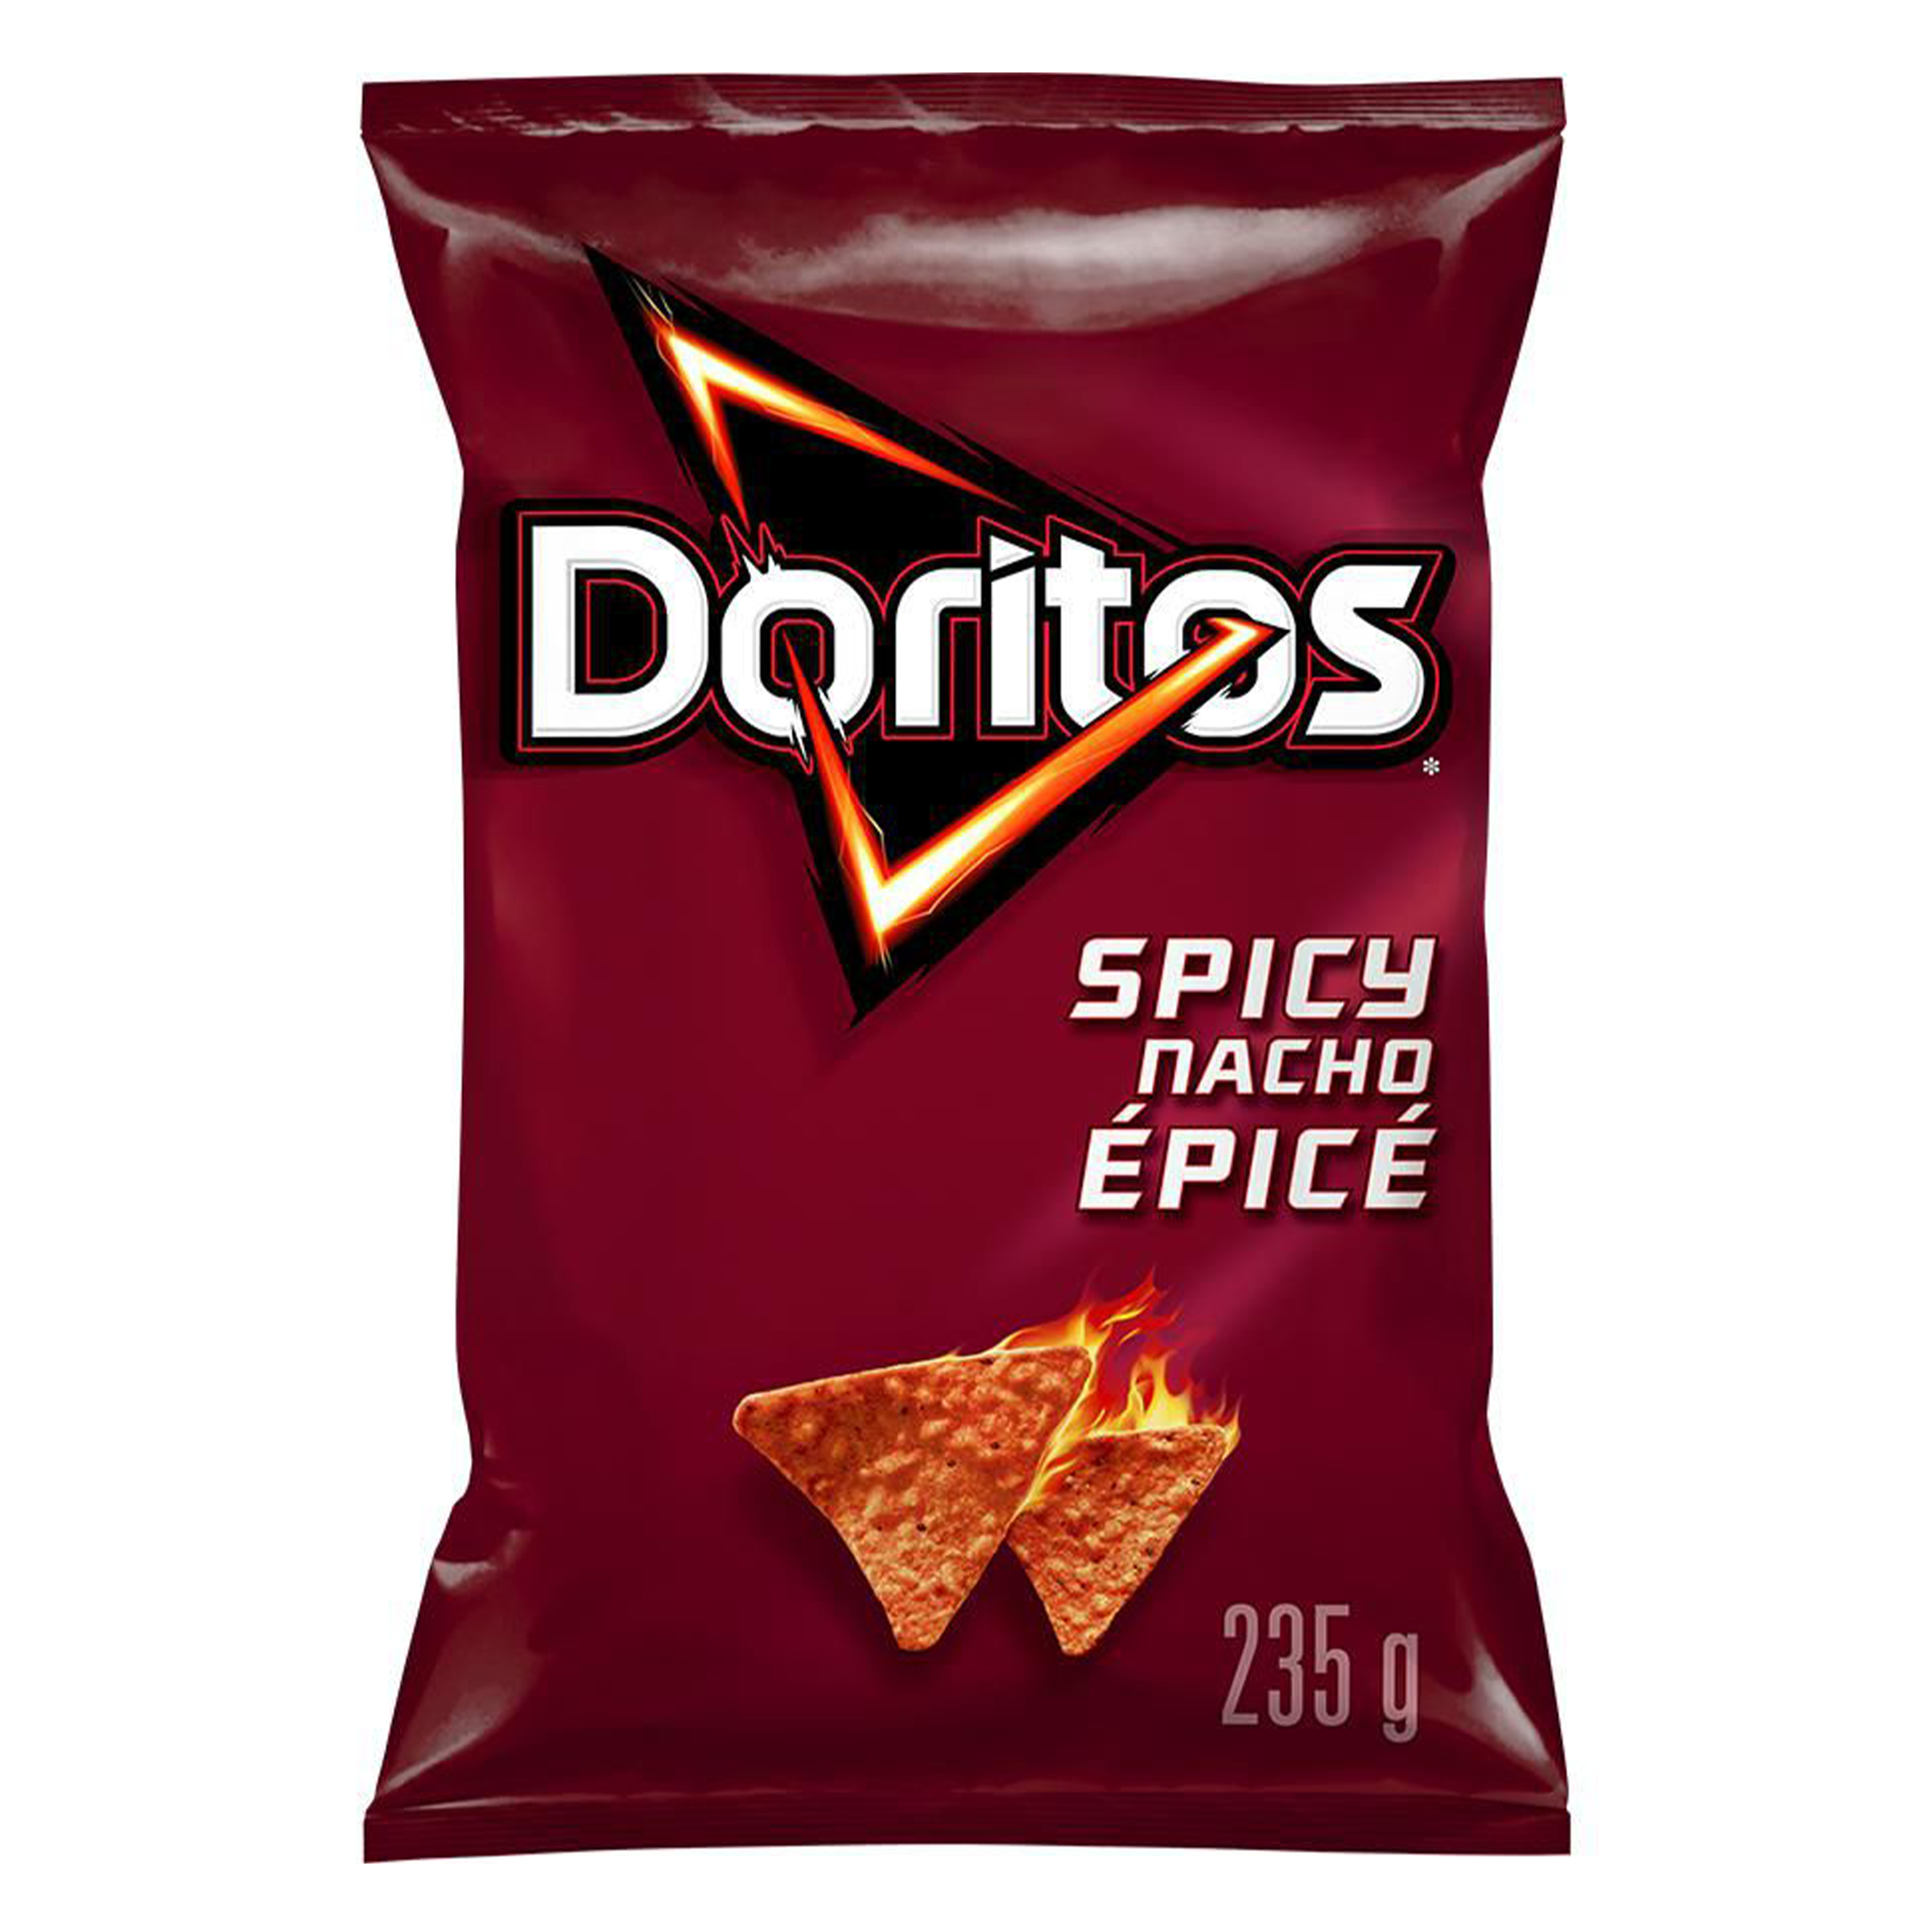 Doritos - Spicy Nacho